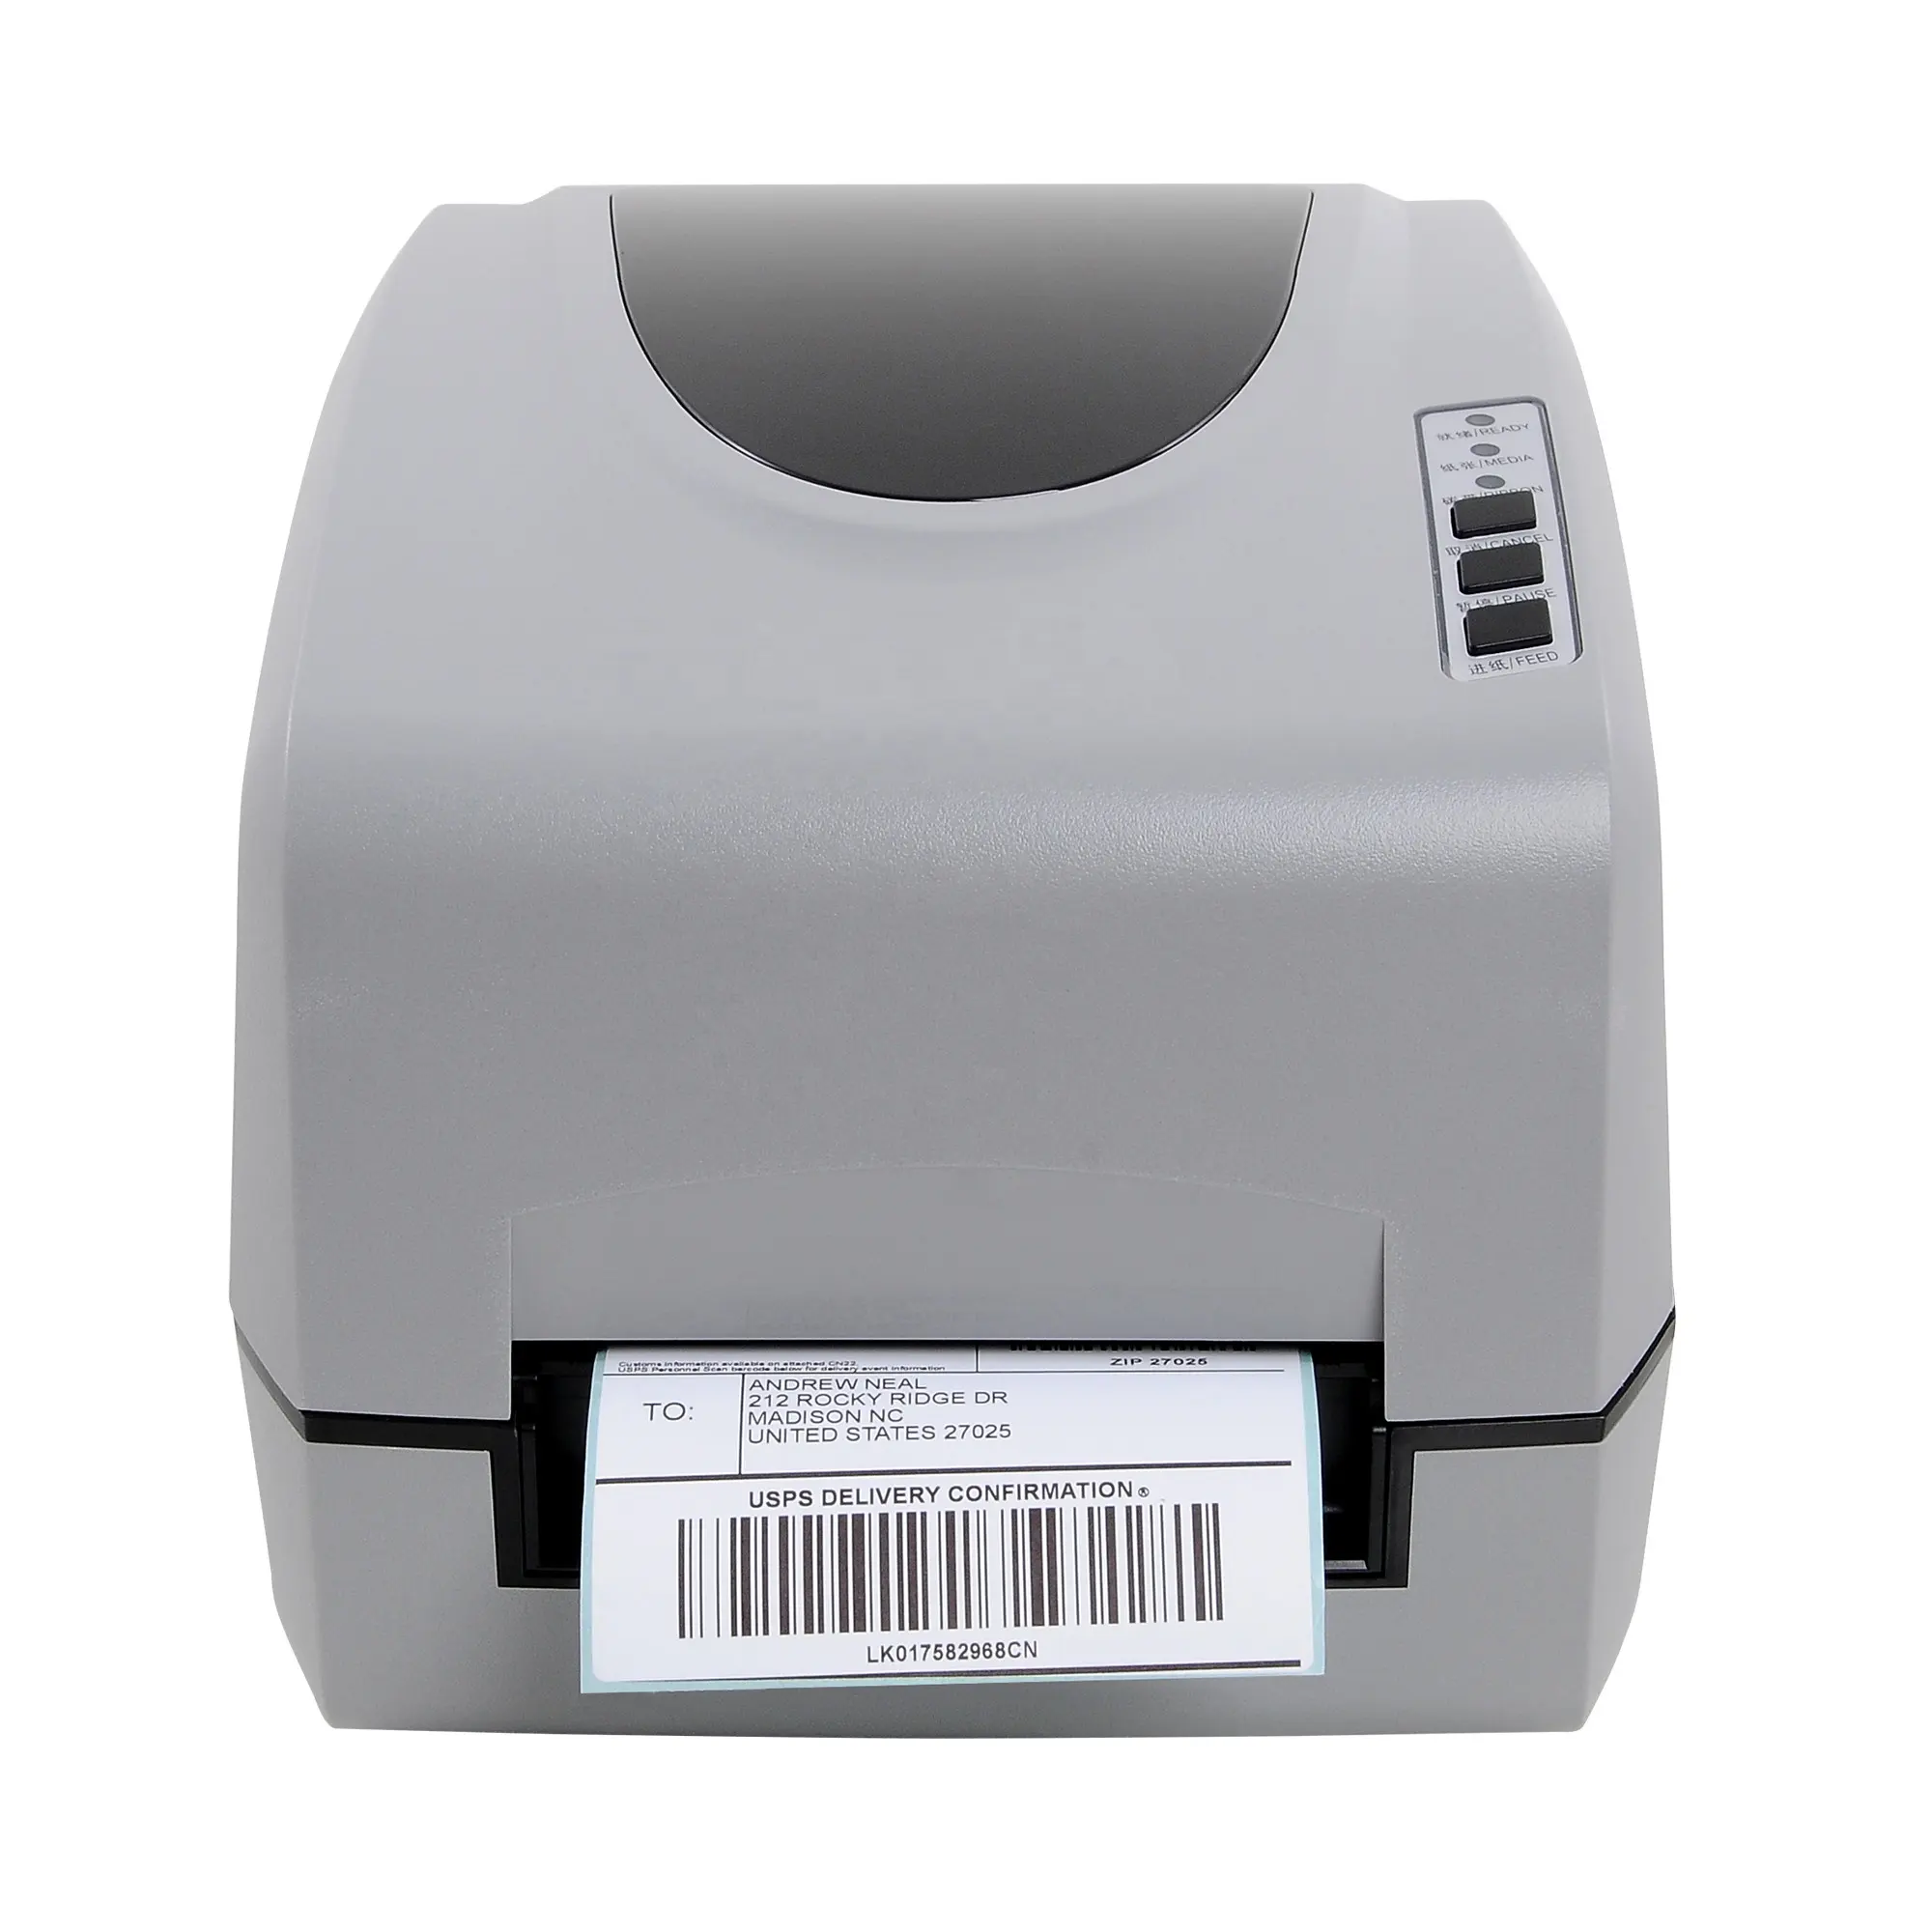 Etikett Tags andere Drucker liefert tragbare Hand drucker billige PVC-Karte Drucker Bond Touch